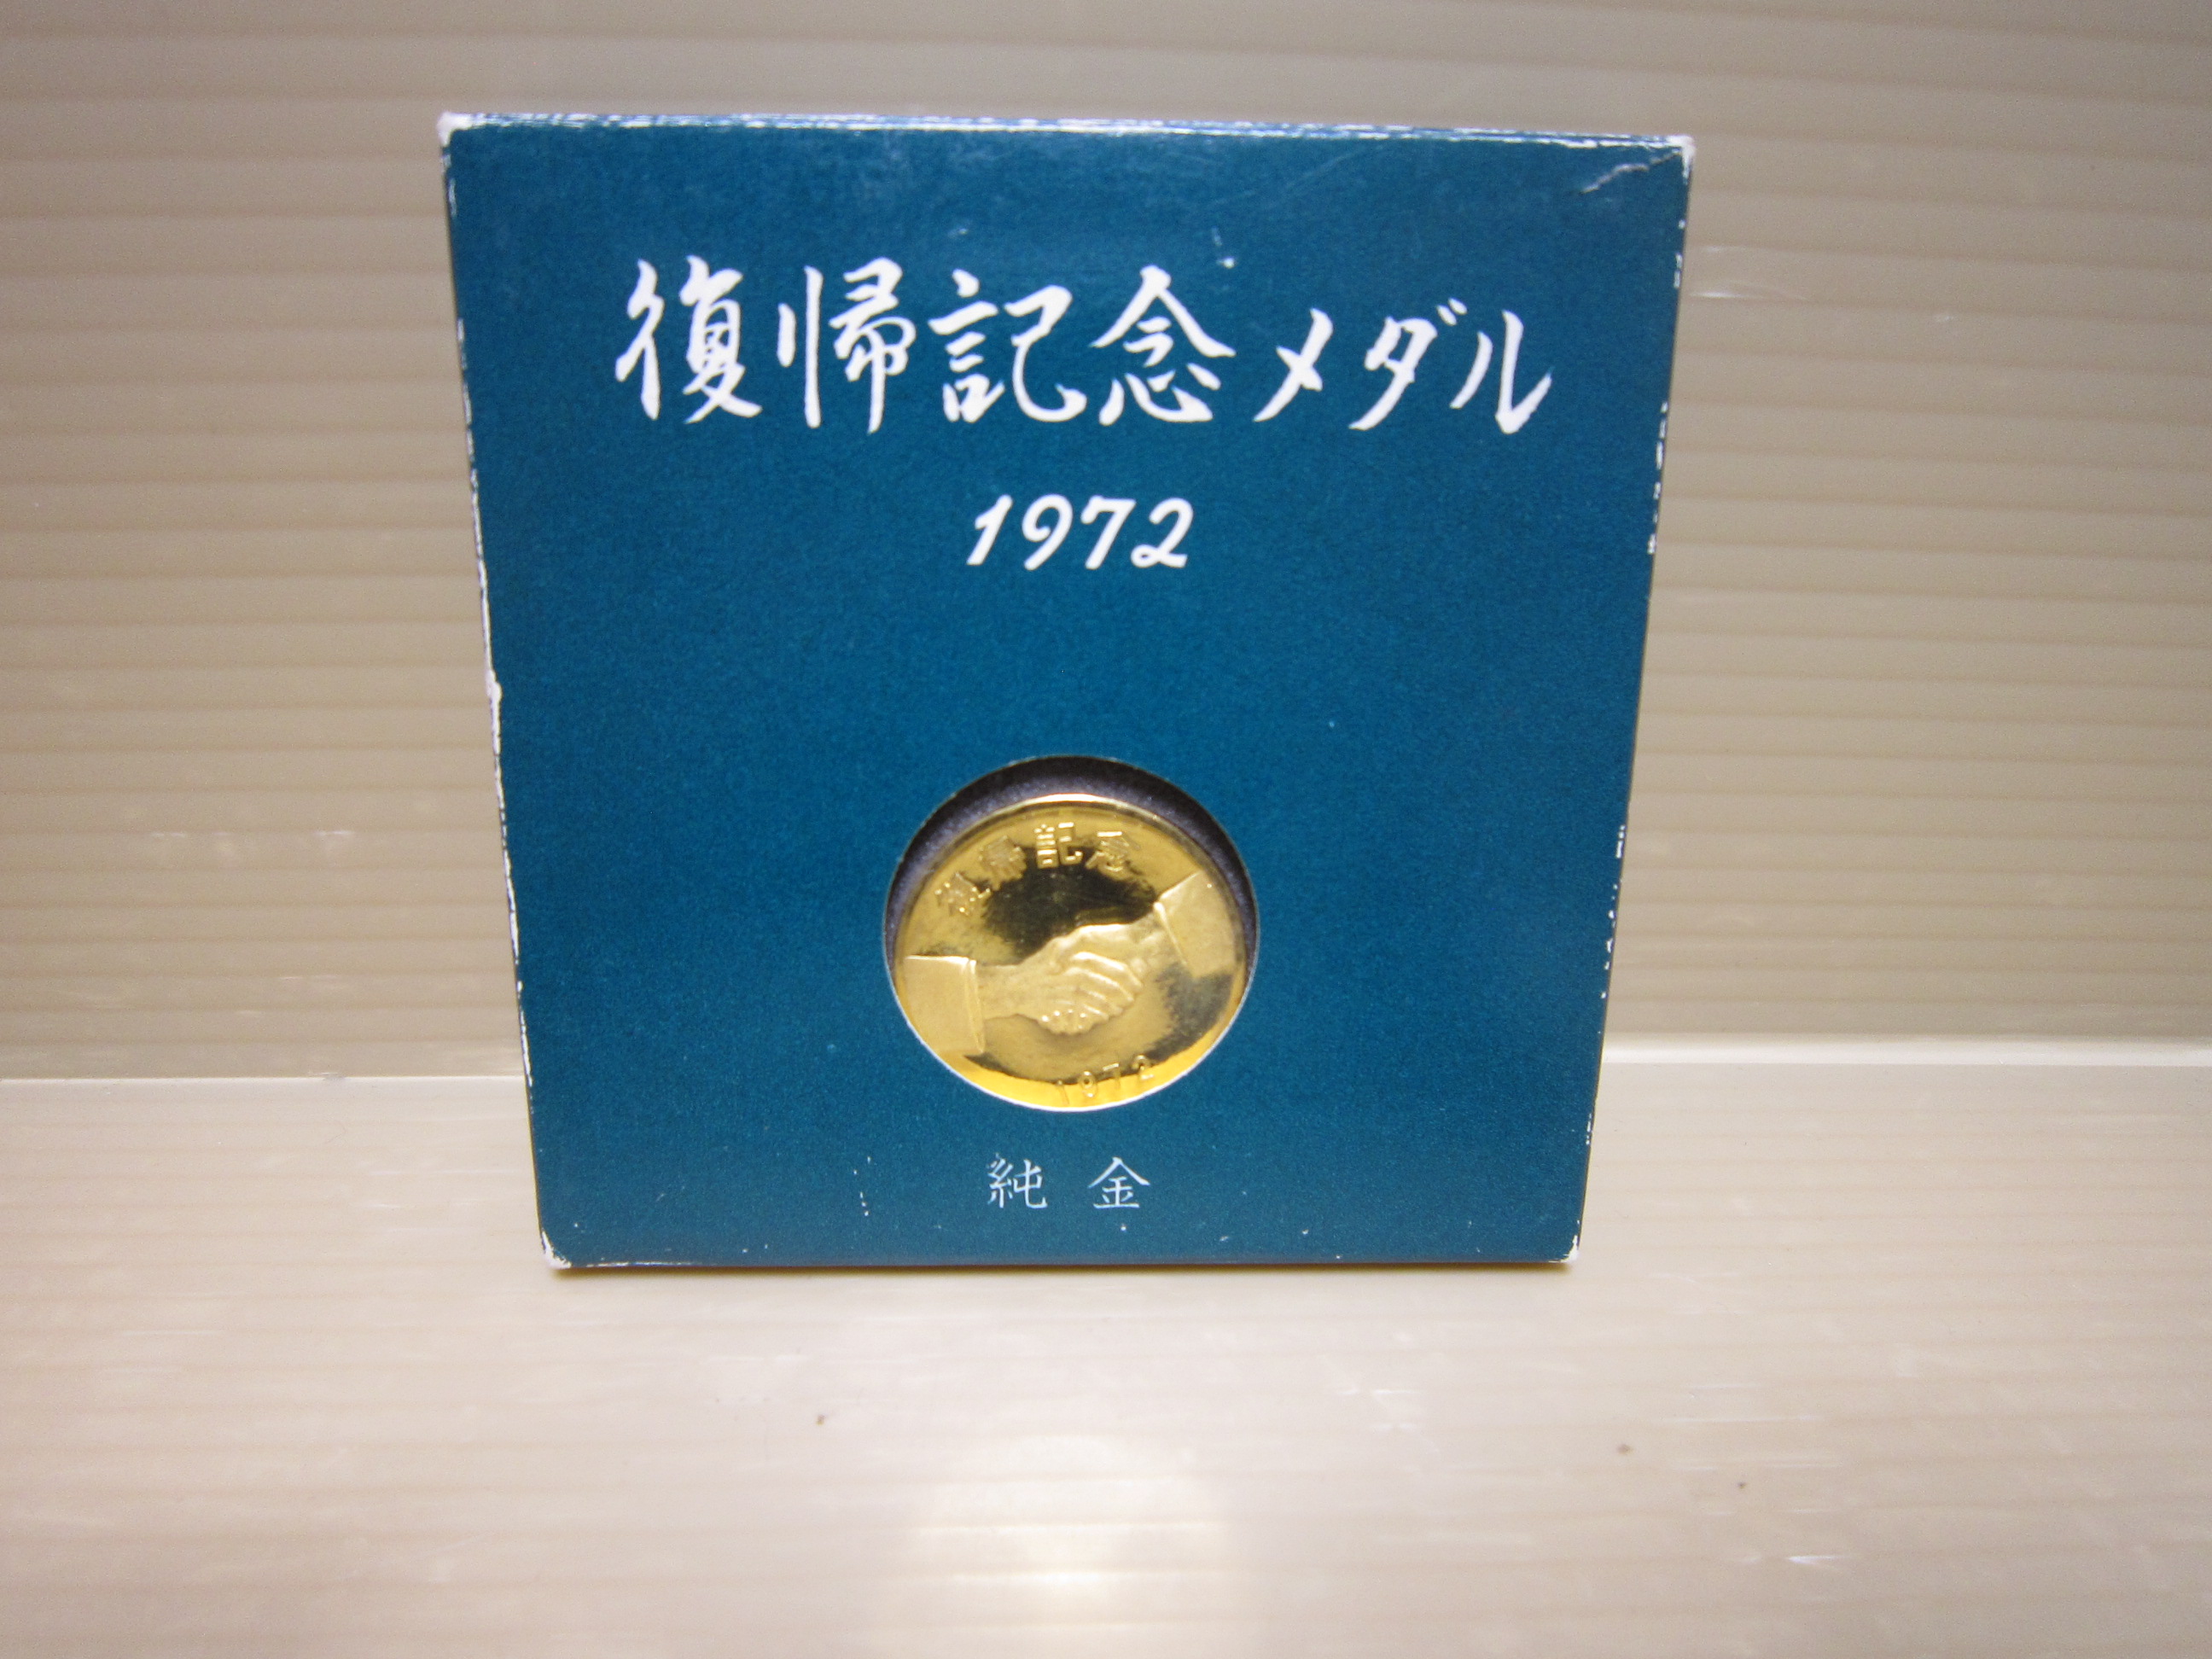 ジャム鳥取店|復帰記念メダル1972 純金沖縄をお売りいただきました